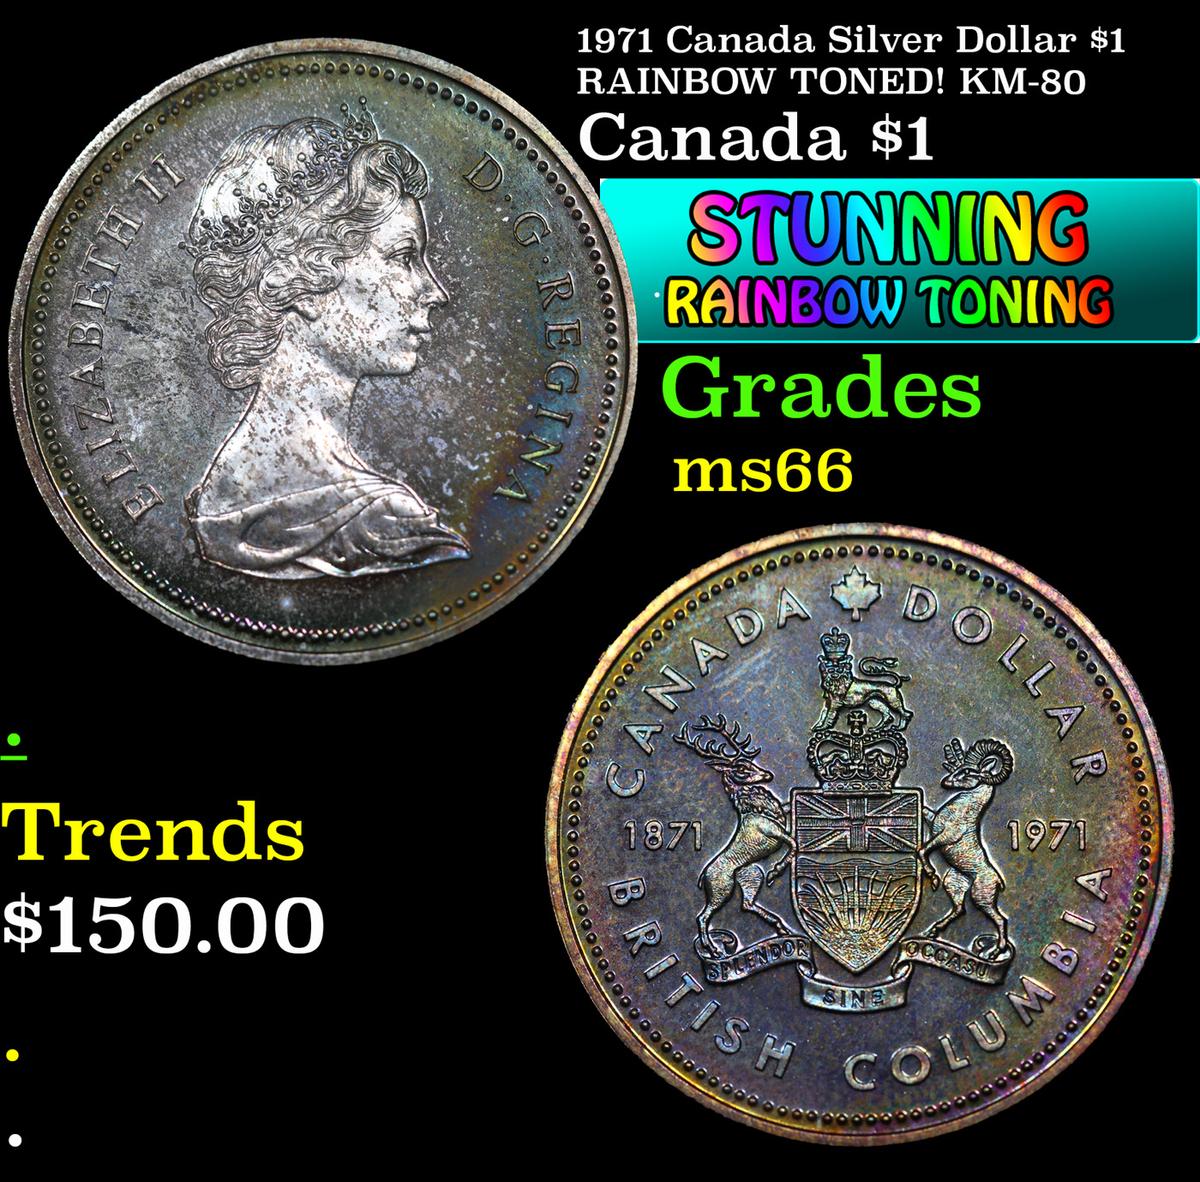 1971 Canada Silver Dollar $1 RAINBOW TONED! KM-80 Grades GEM+ Unc